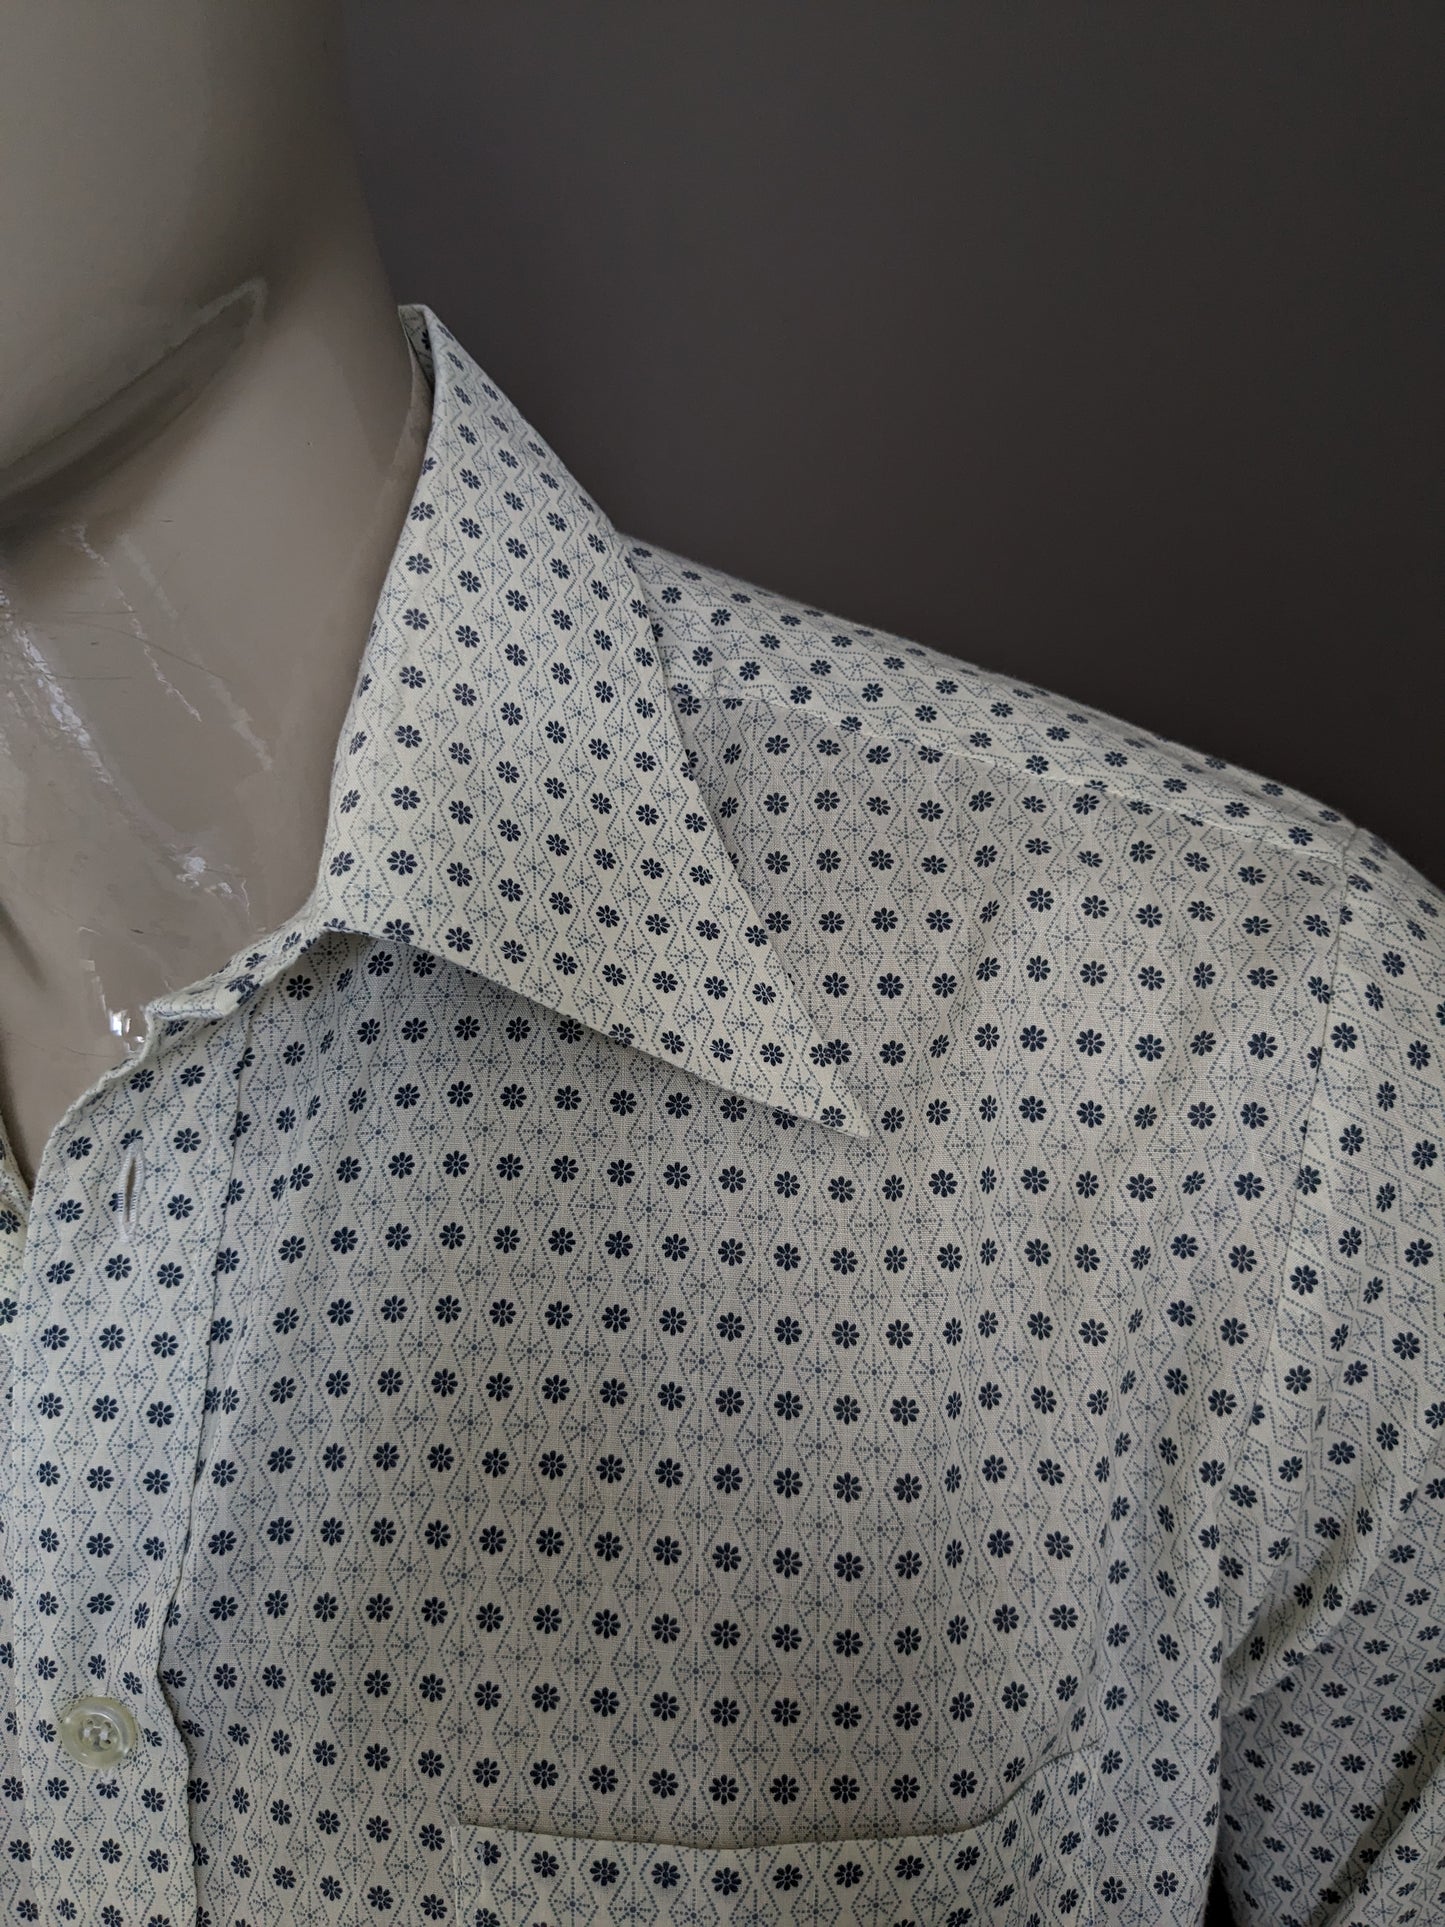 Shirt de Fabio 70 vintage avec collier. Floral gris beige. Taille xl.